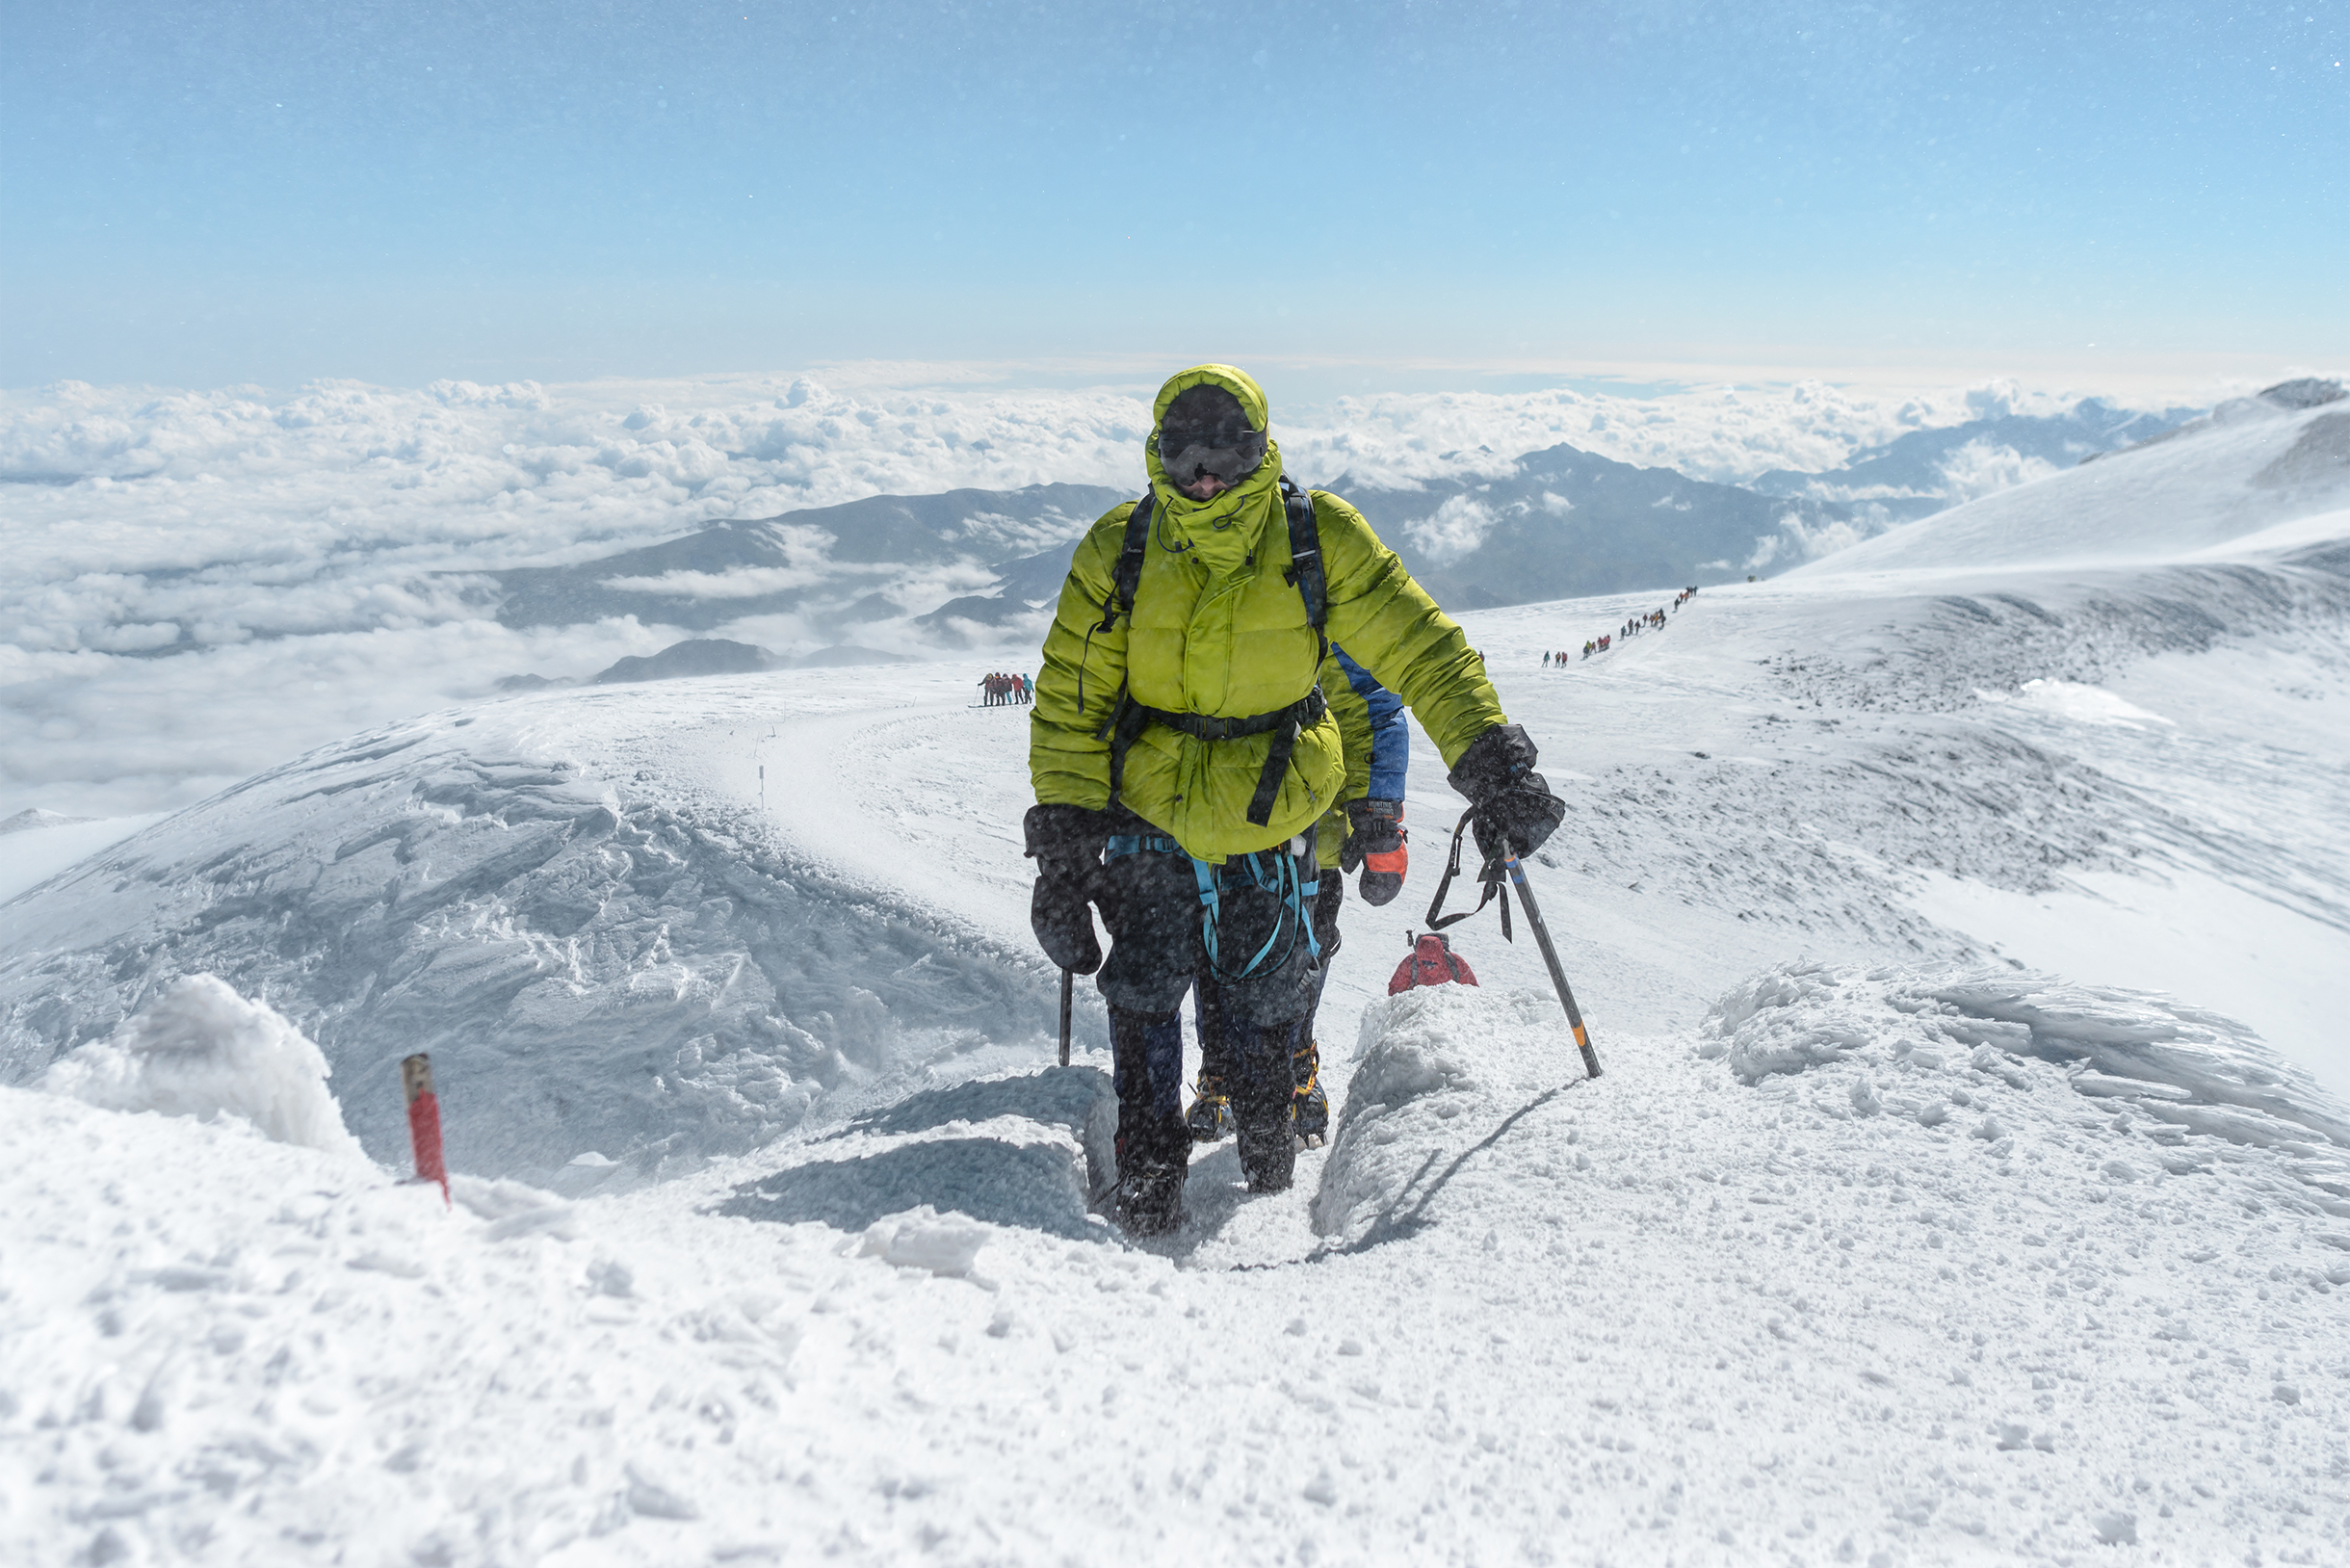 Выход на западную вершину Эльбруса, высота — 5642 м. Склоны кажутся чуть ли не ровными полянами, но фотографии искажают крутизну